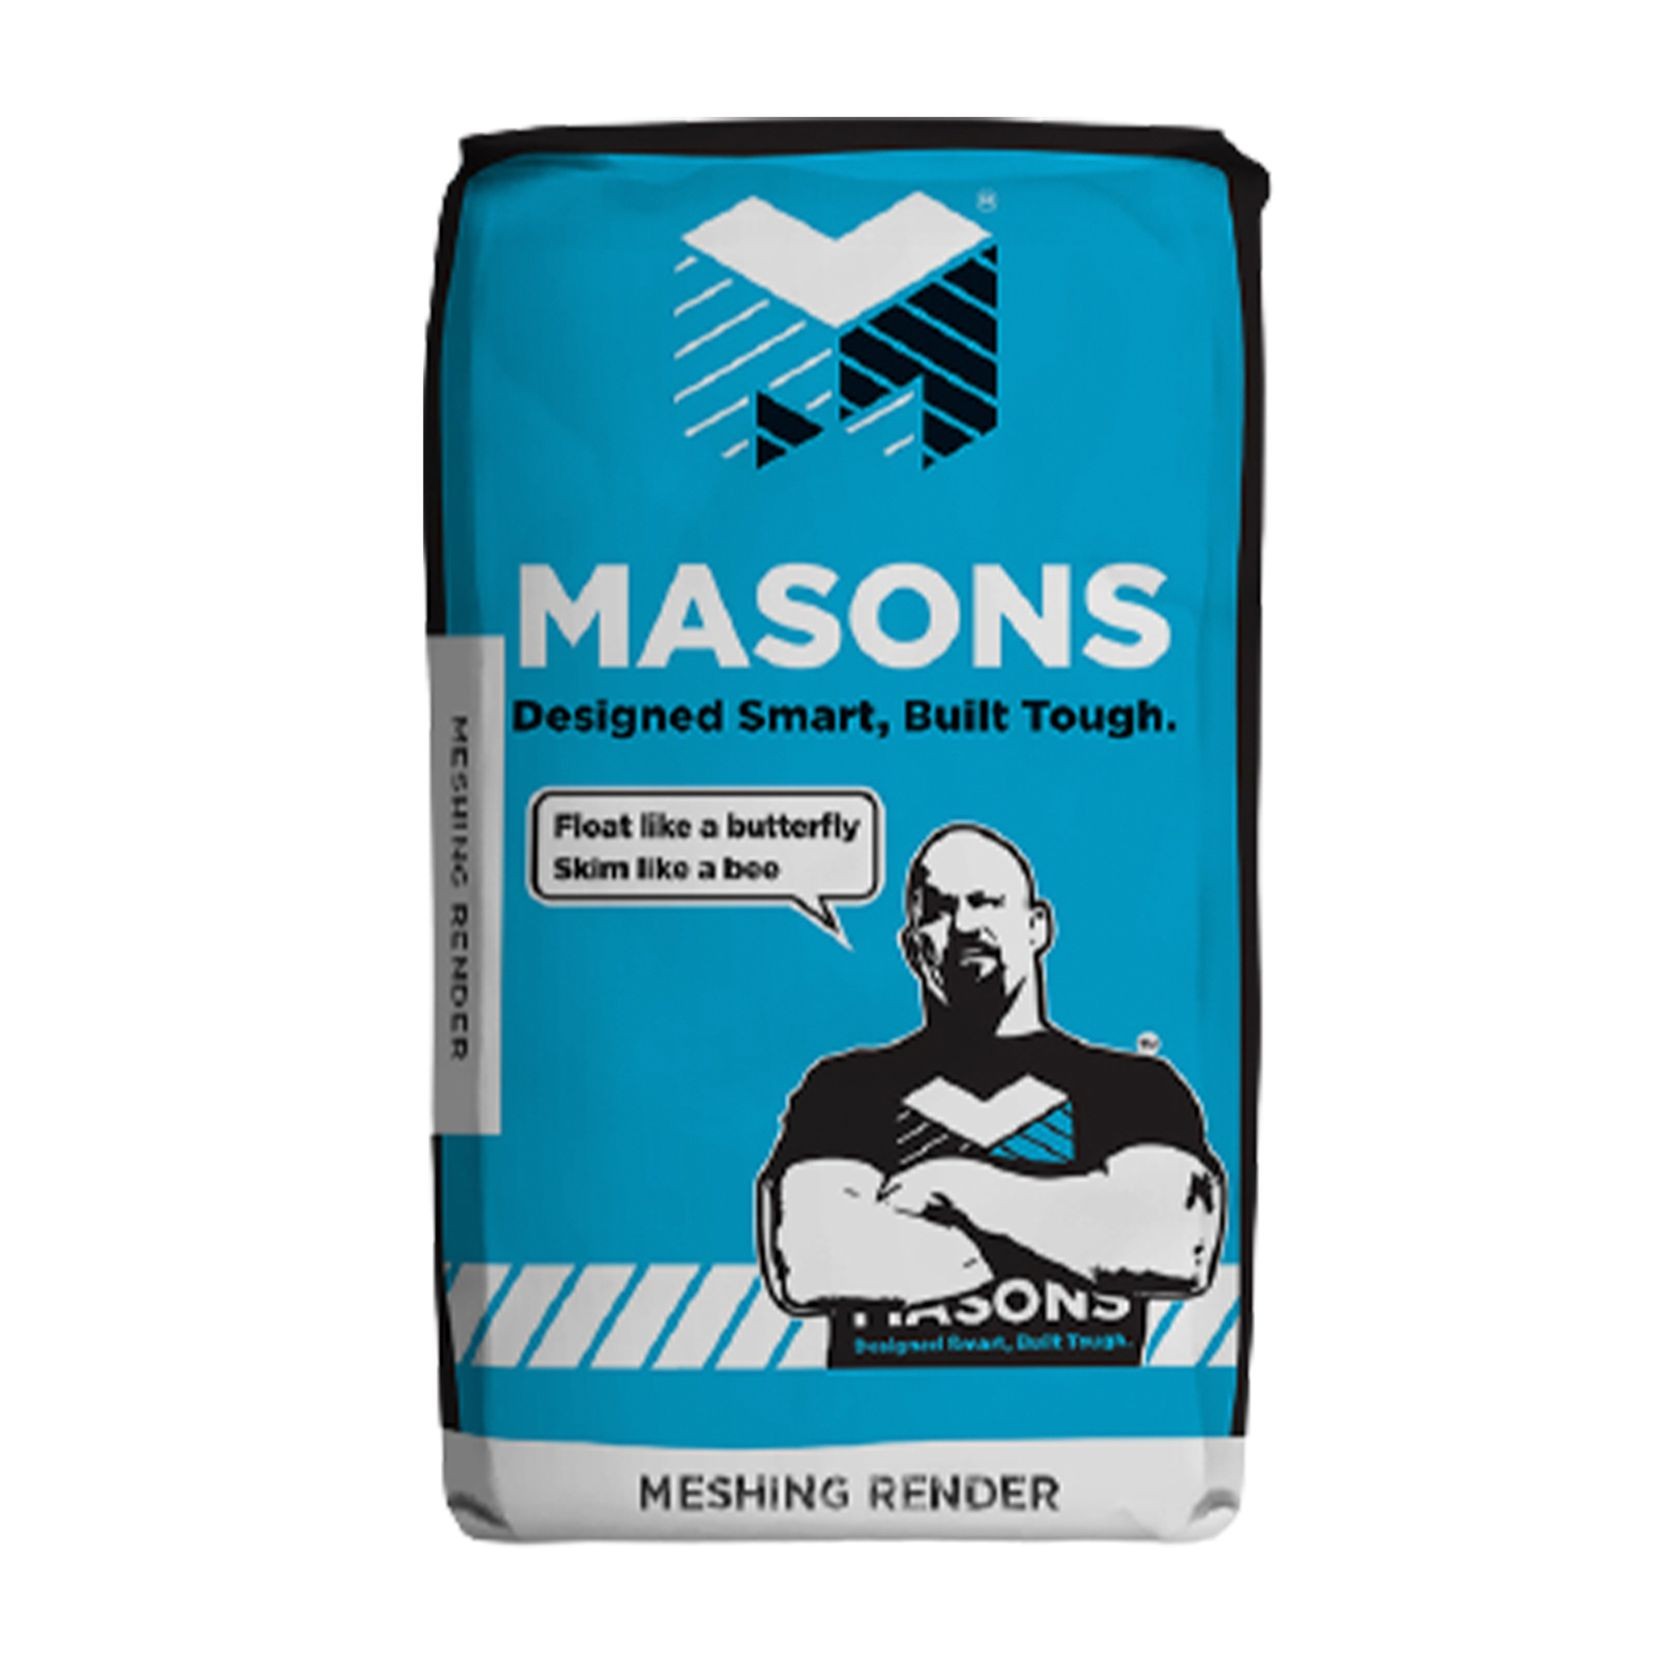 Masons Meshing Plaster Render gallery detail image